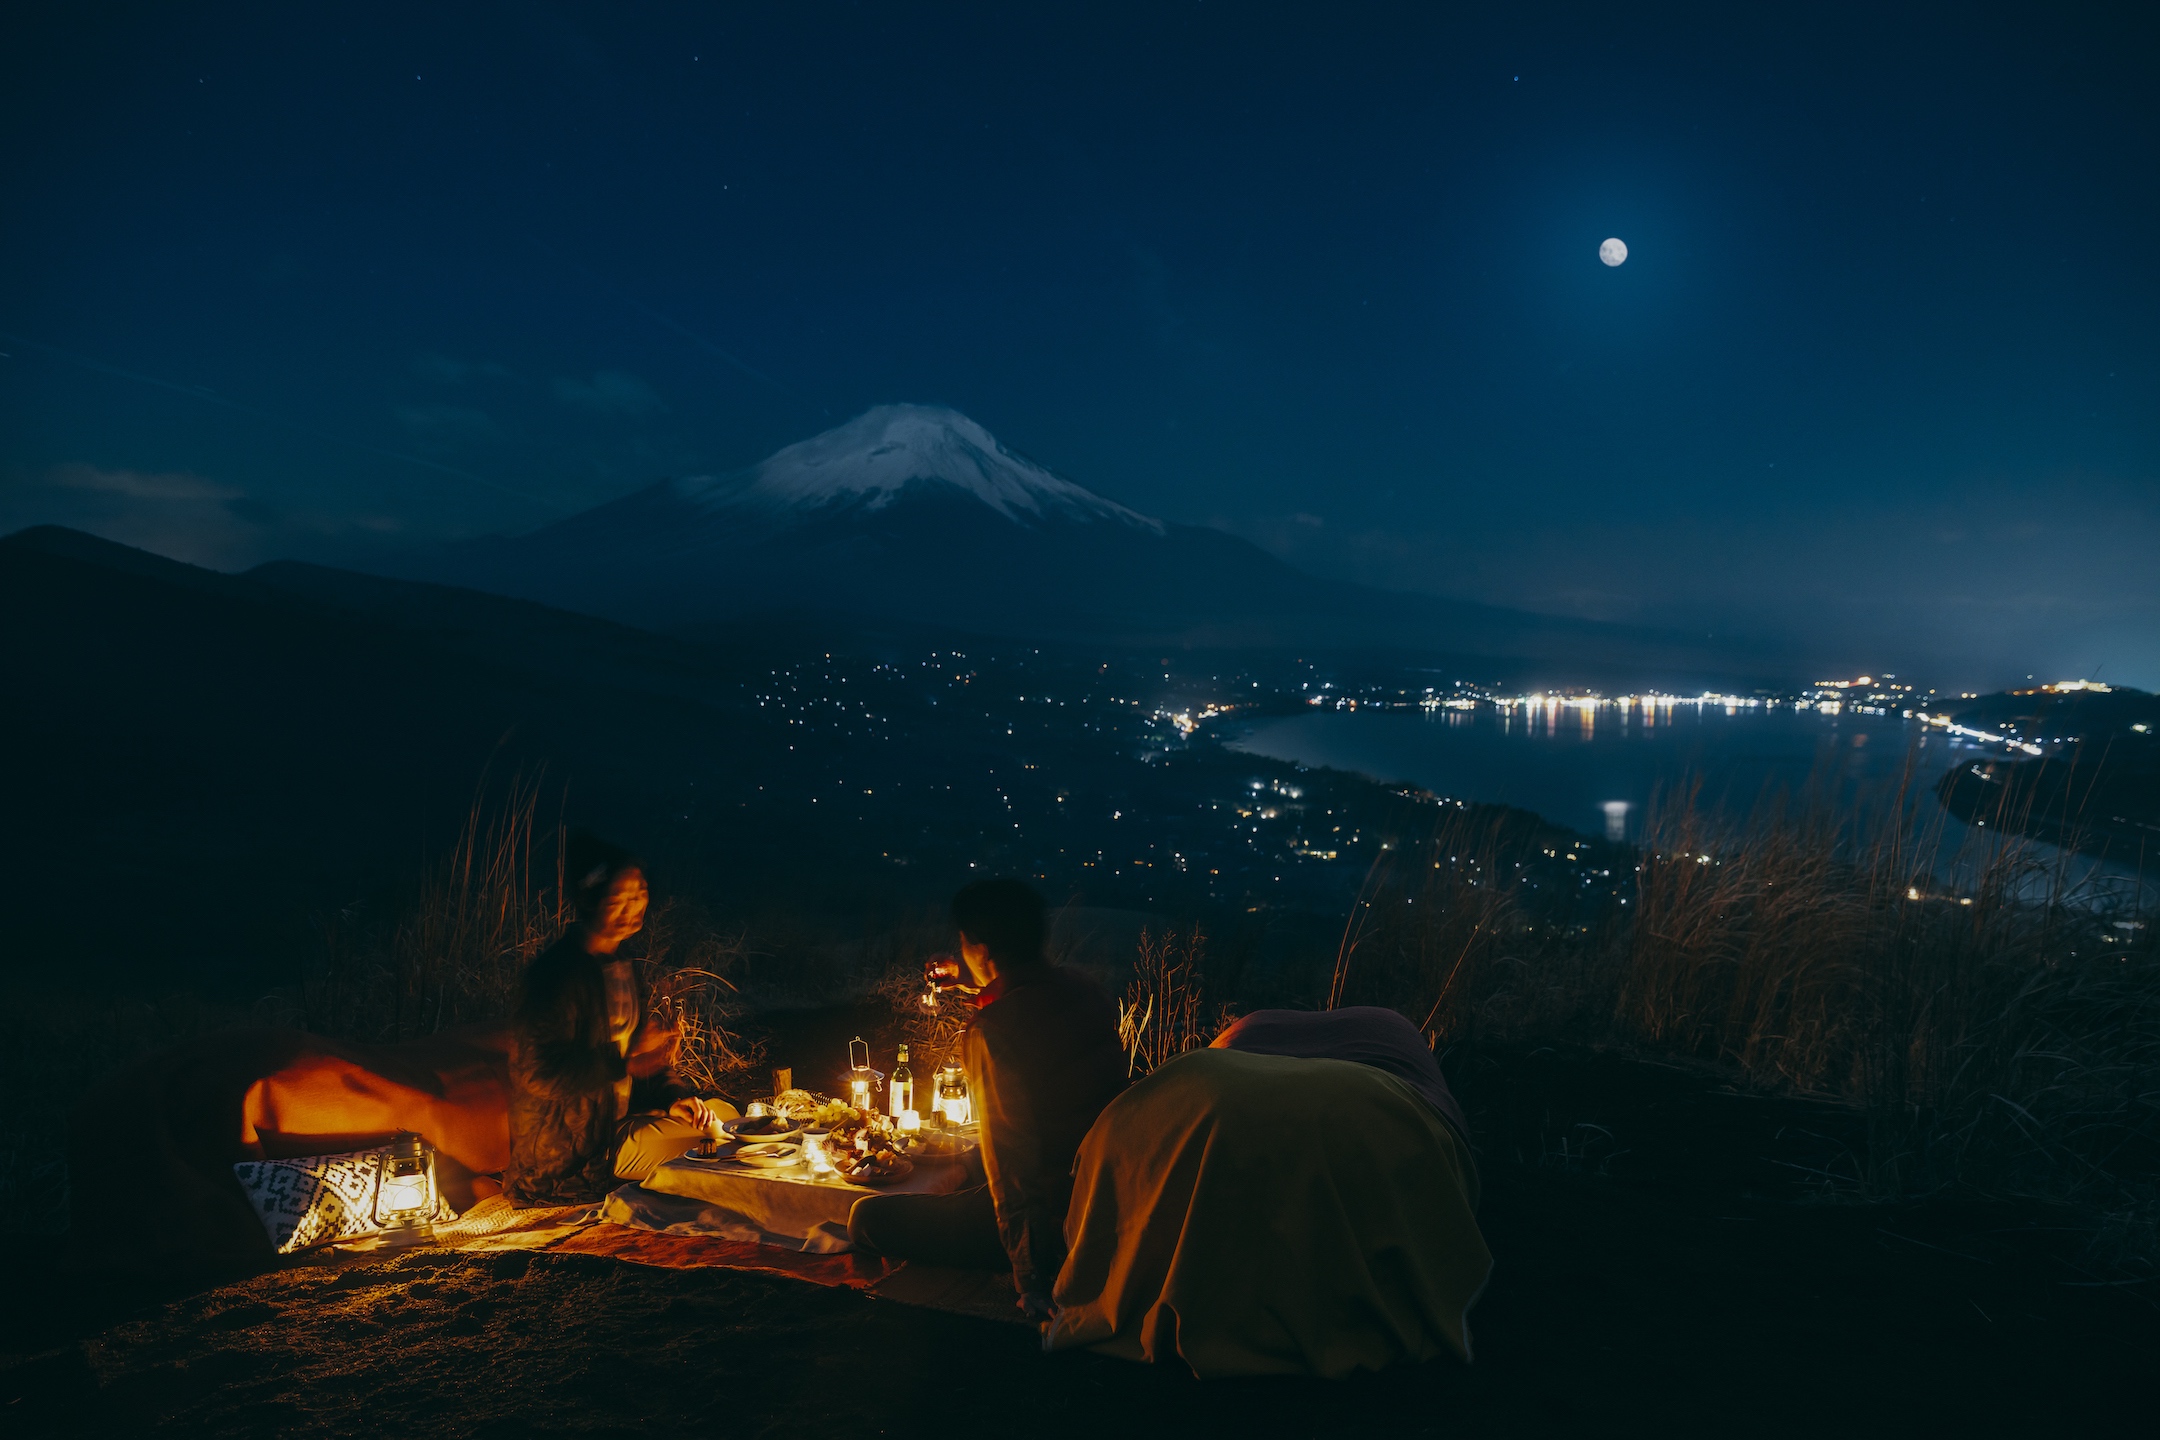 星のや富士　富士の絶景を望みながら秋の月夜を楽しむ1日1組限定プログラム「富士ムーンナイトピクニック」開催　期間：2020年9月1日〜11月30日　半月・満月の夜限定